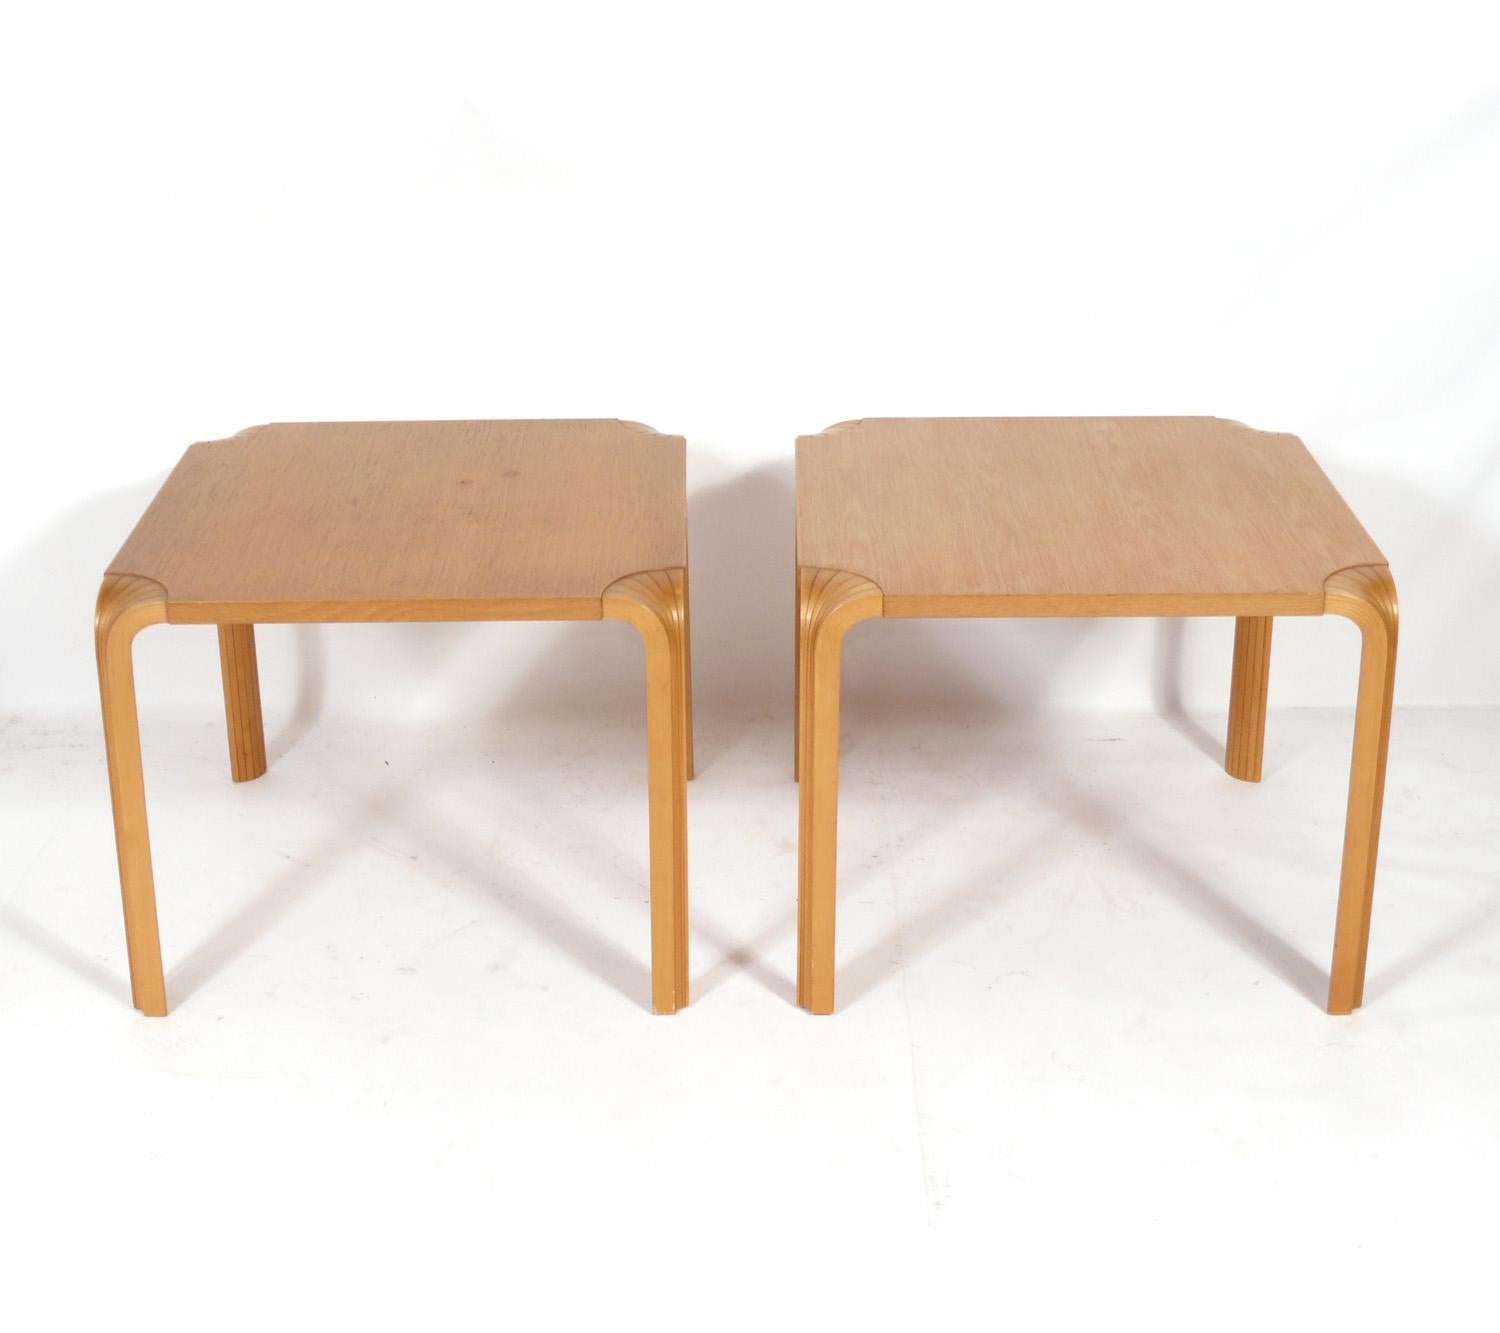 Ein Paar Beistelltische von Alvar Aalto, für Artek, Finnland, um 1980. Sie bewahren ihre warme Originalpatina. Sie haben eine vielseitige Größe und können als Beistelltische oder Nachttische verwendet werden.